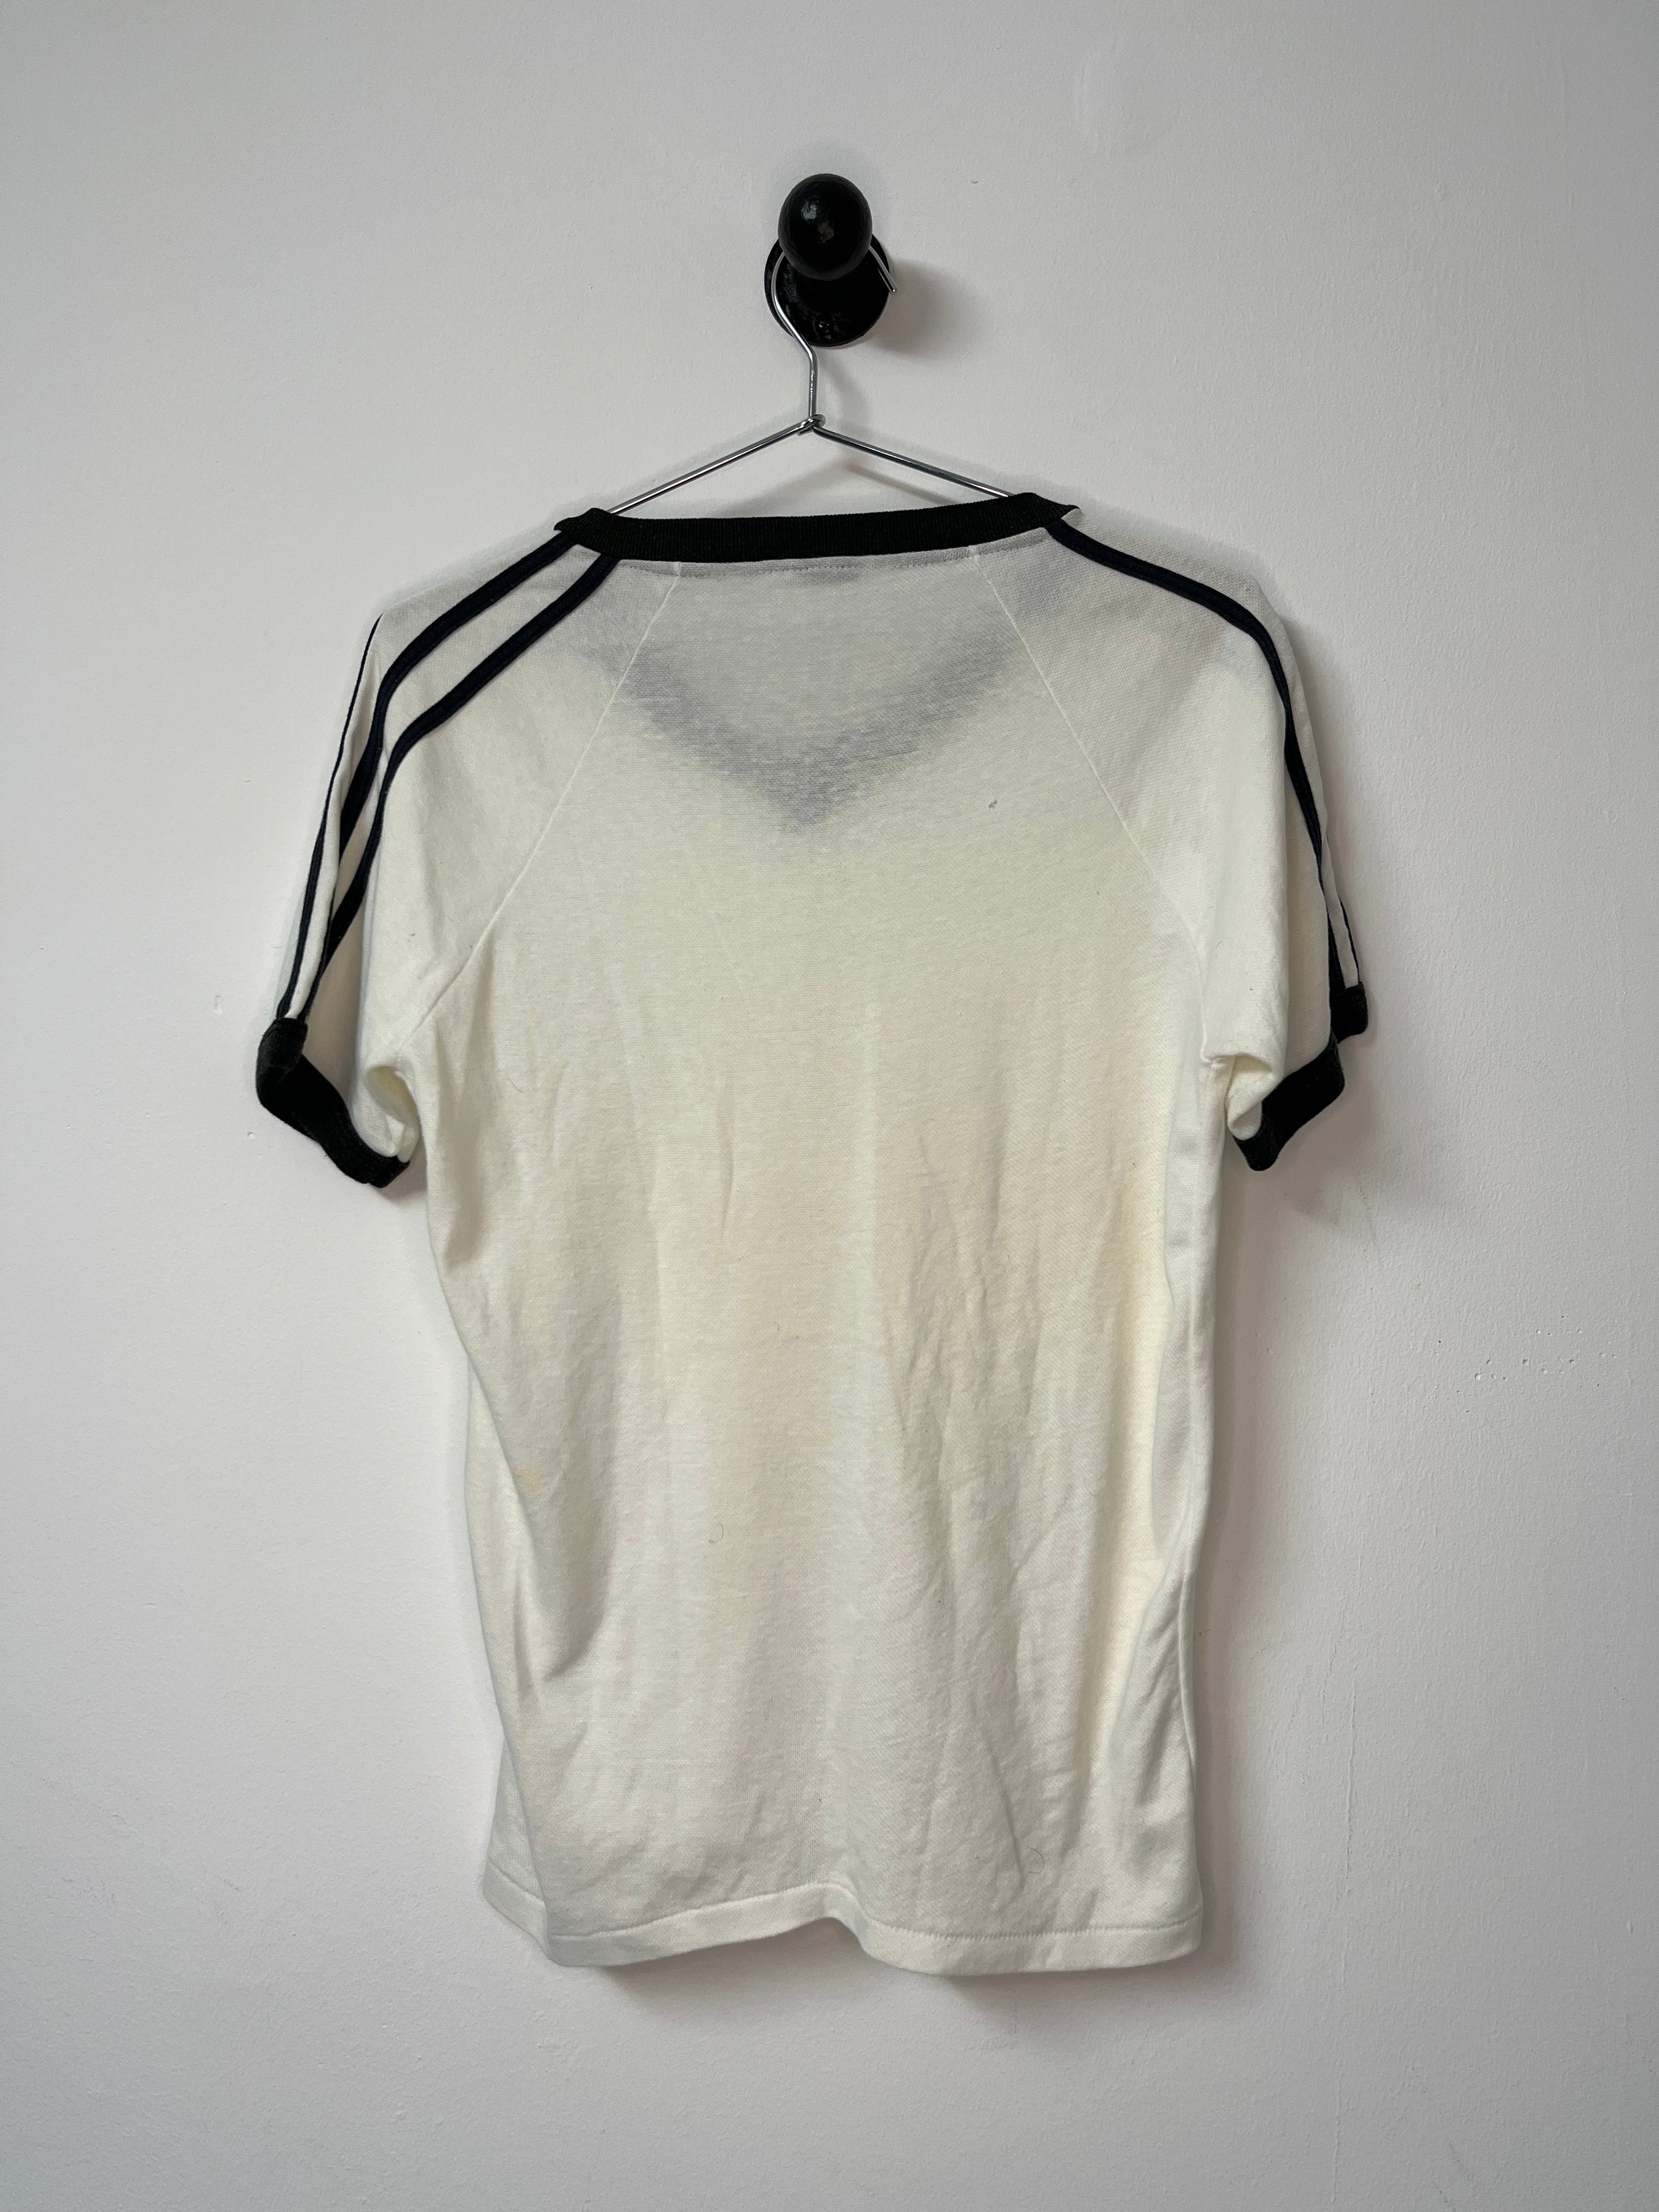 1970s/80s Striped and Trimmed V-Neck Ringer T-Shirt - White/Black - M